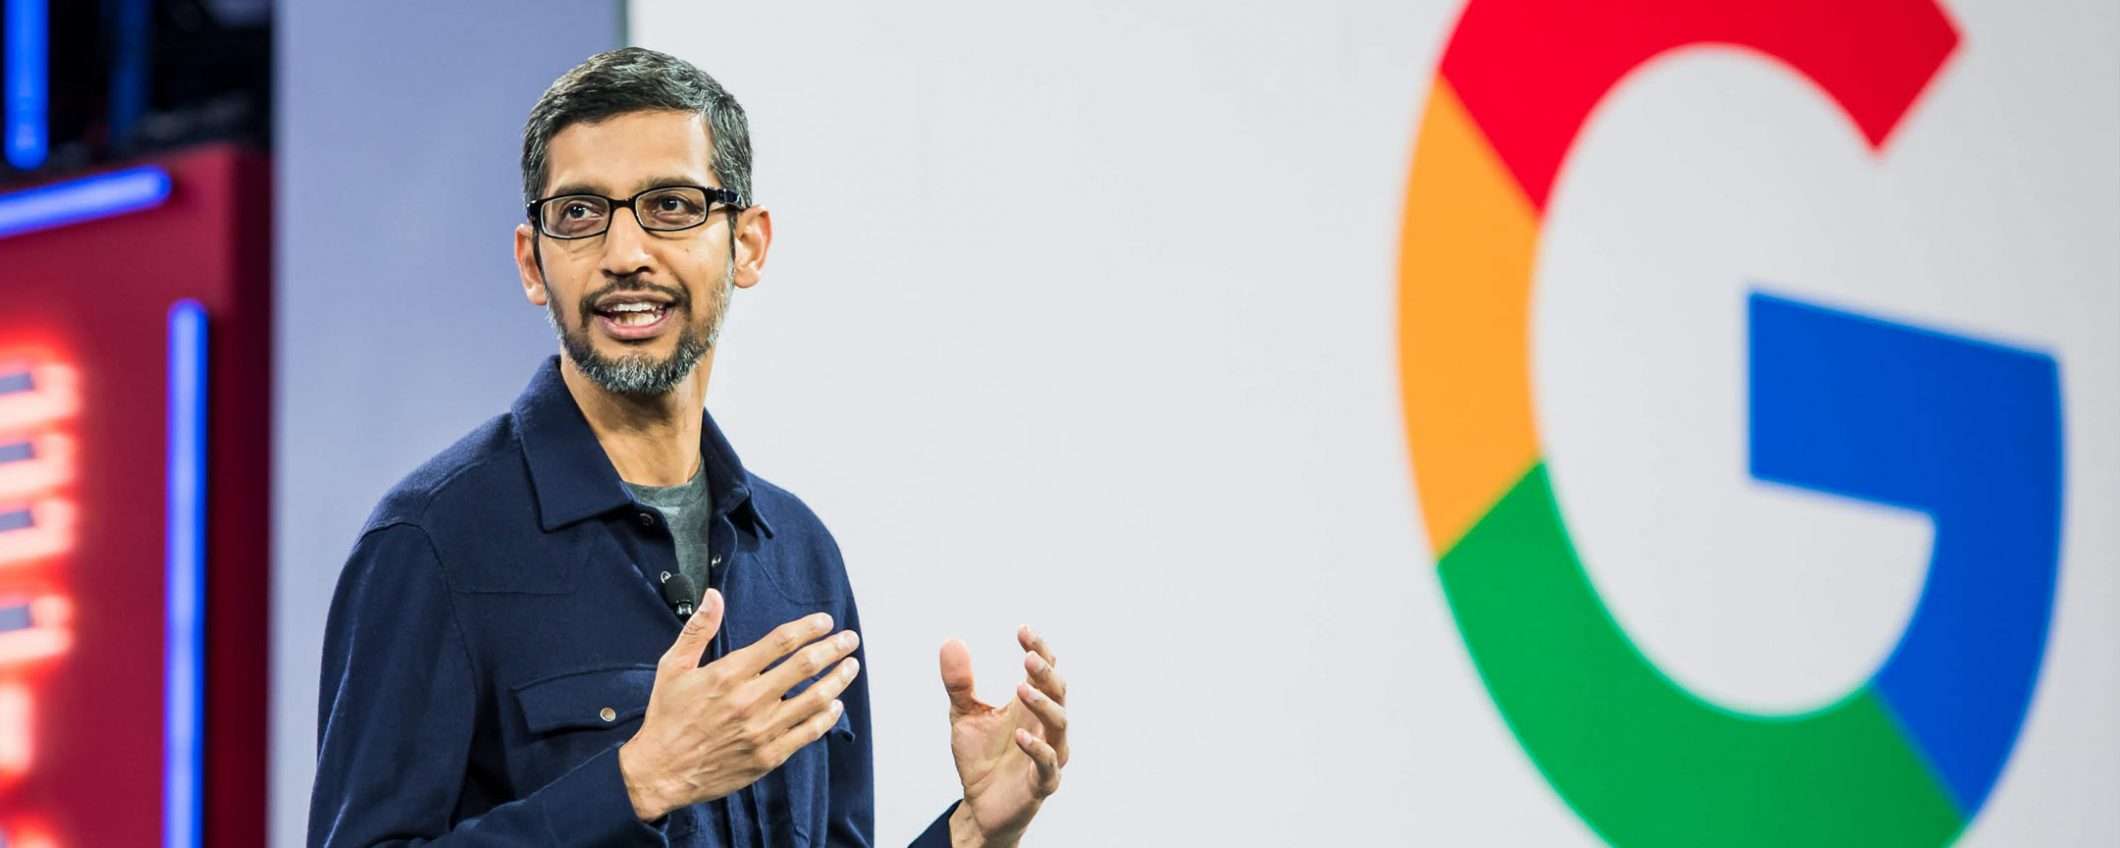 Evento Google 15 ottobre: Pixel 4, speaker e altro